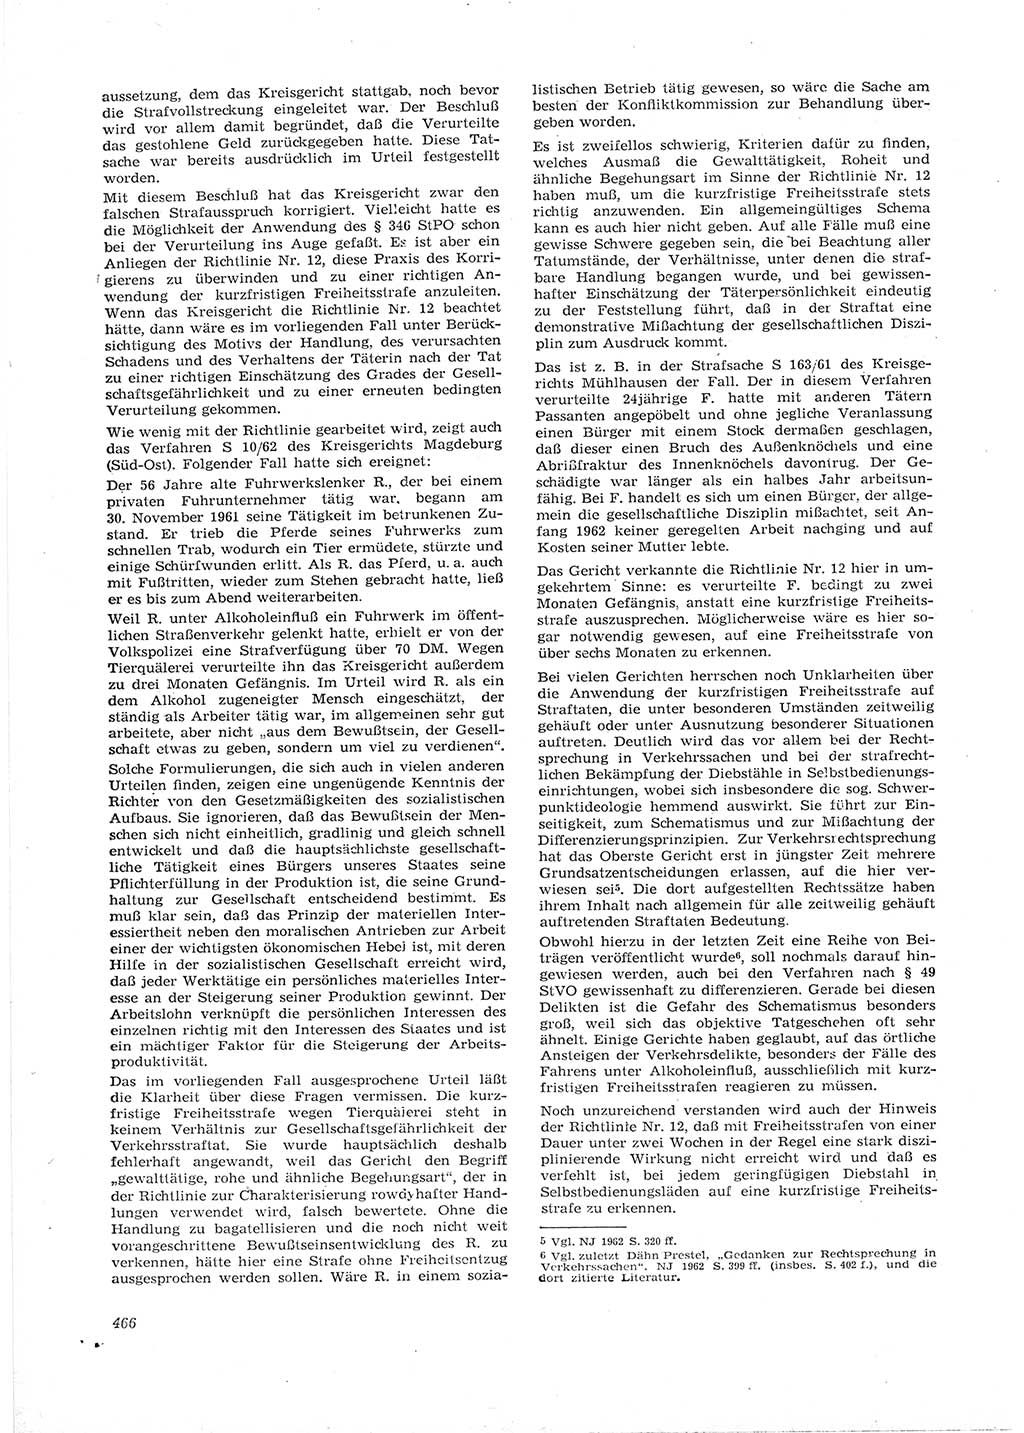 Neue Justiz (NJ), Zeitschrift für Recht und Rechtswissenschaft [Deutsche Demokratische Republik (DDR)], 16. Jahrgang 1962, Seite 466 (NJ DDR 1962, S. 466)